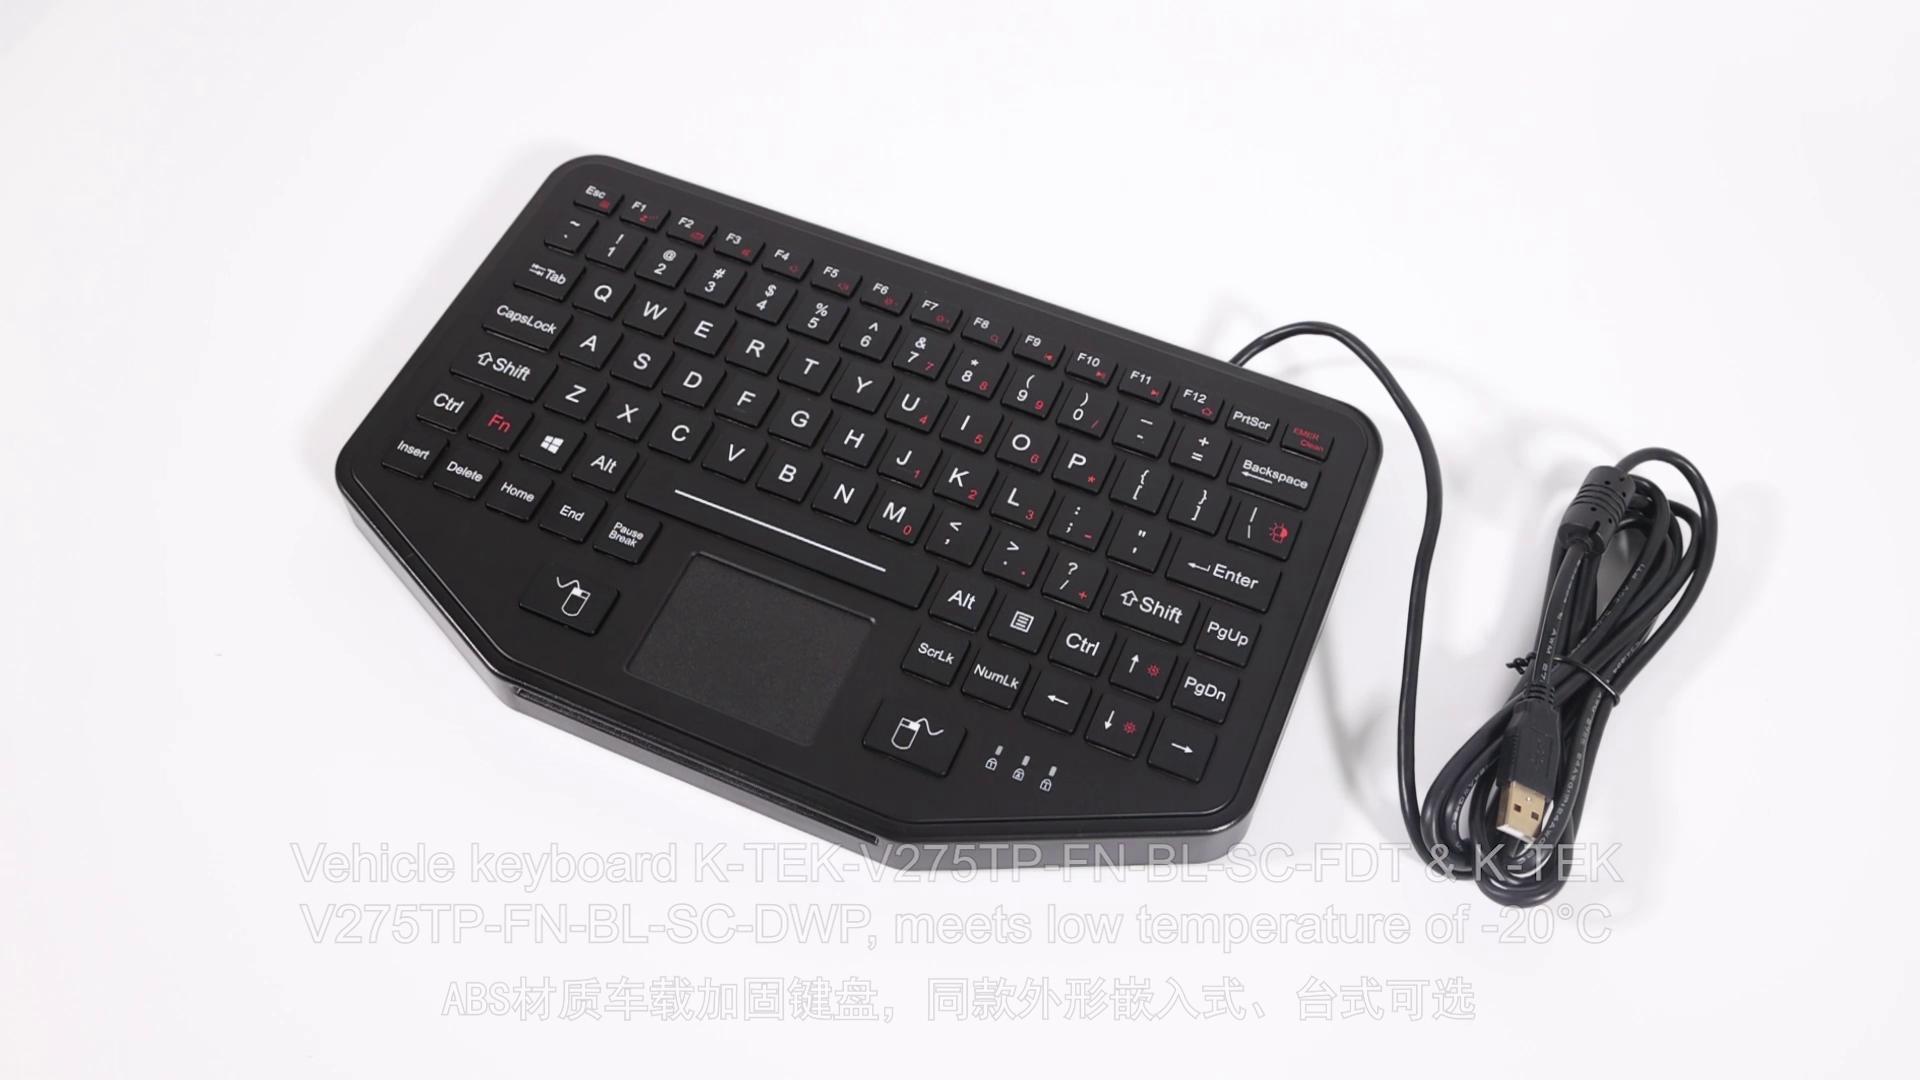 K-TEK-V275TP-FN-BL-SC-FDT VESA mountable desktop vehicle keyboard